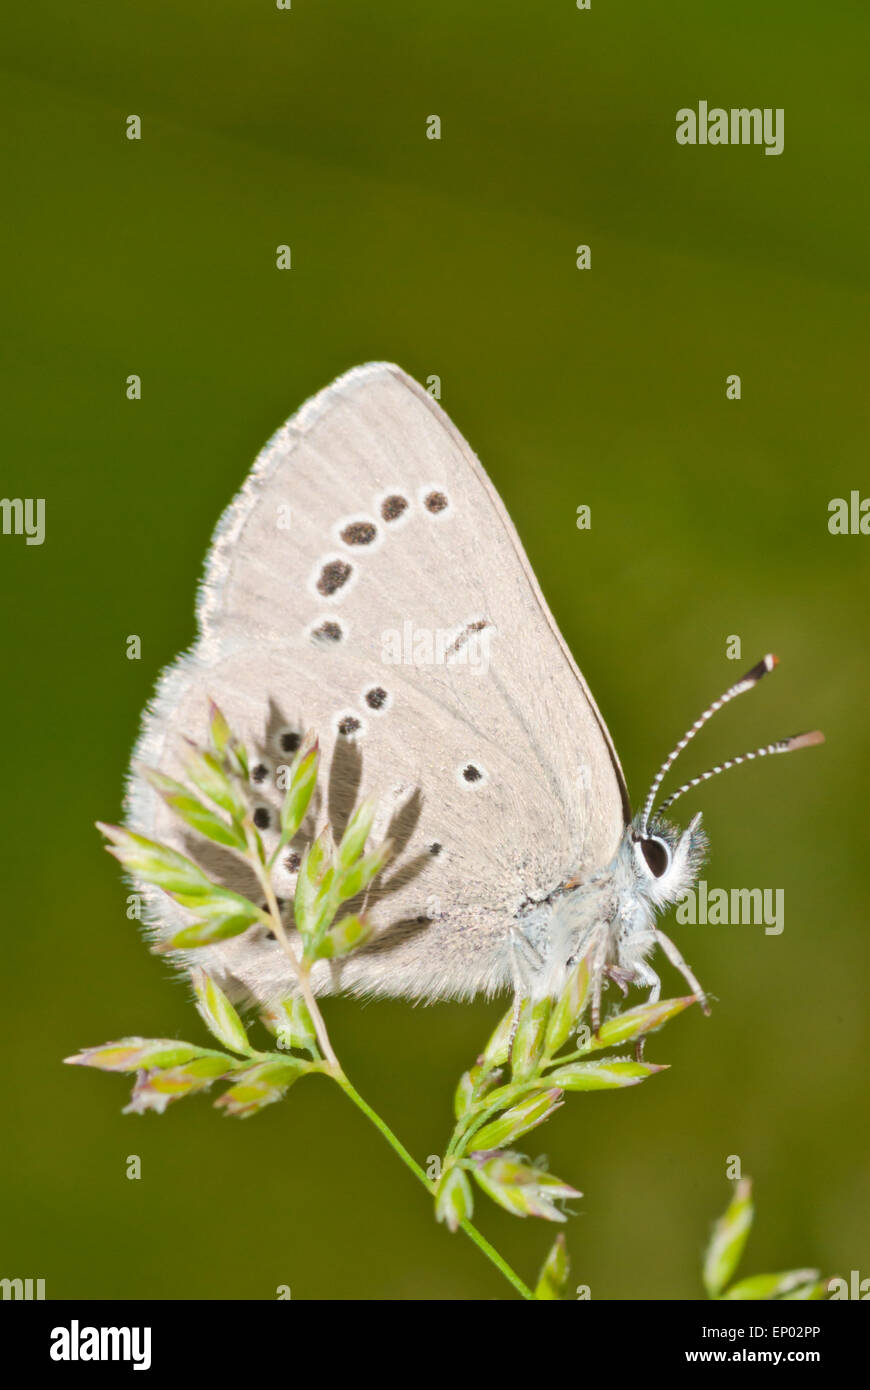 Vue de profil d'un bleu argenté Glaucopsyche lygdamus, papillon, perchée sur une herbe-tête. Banque D'Images